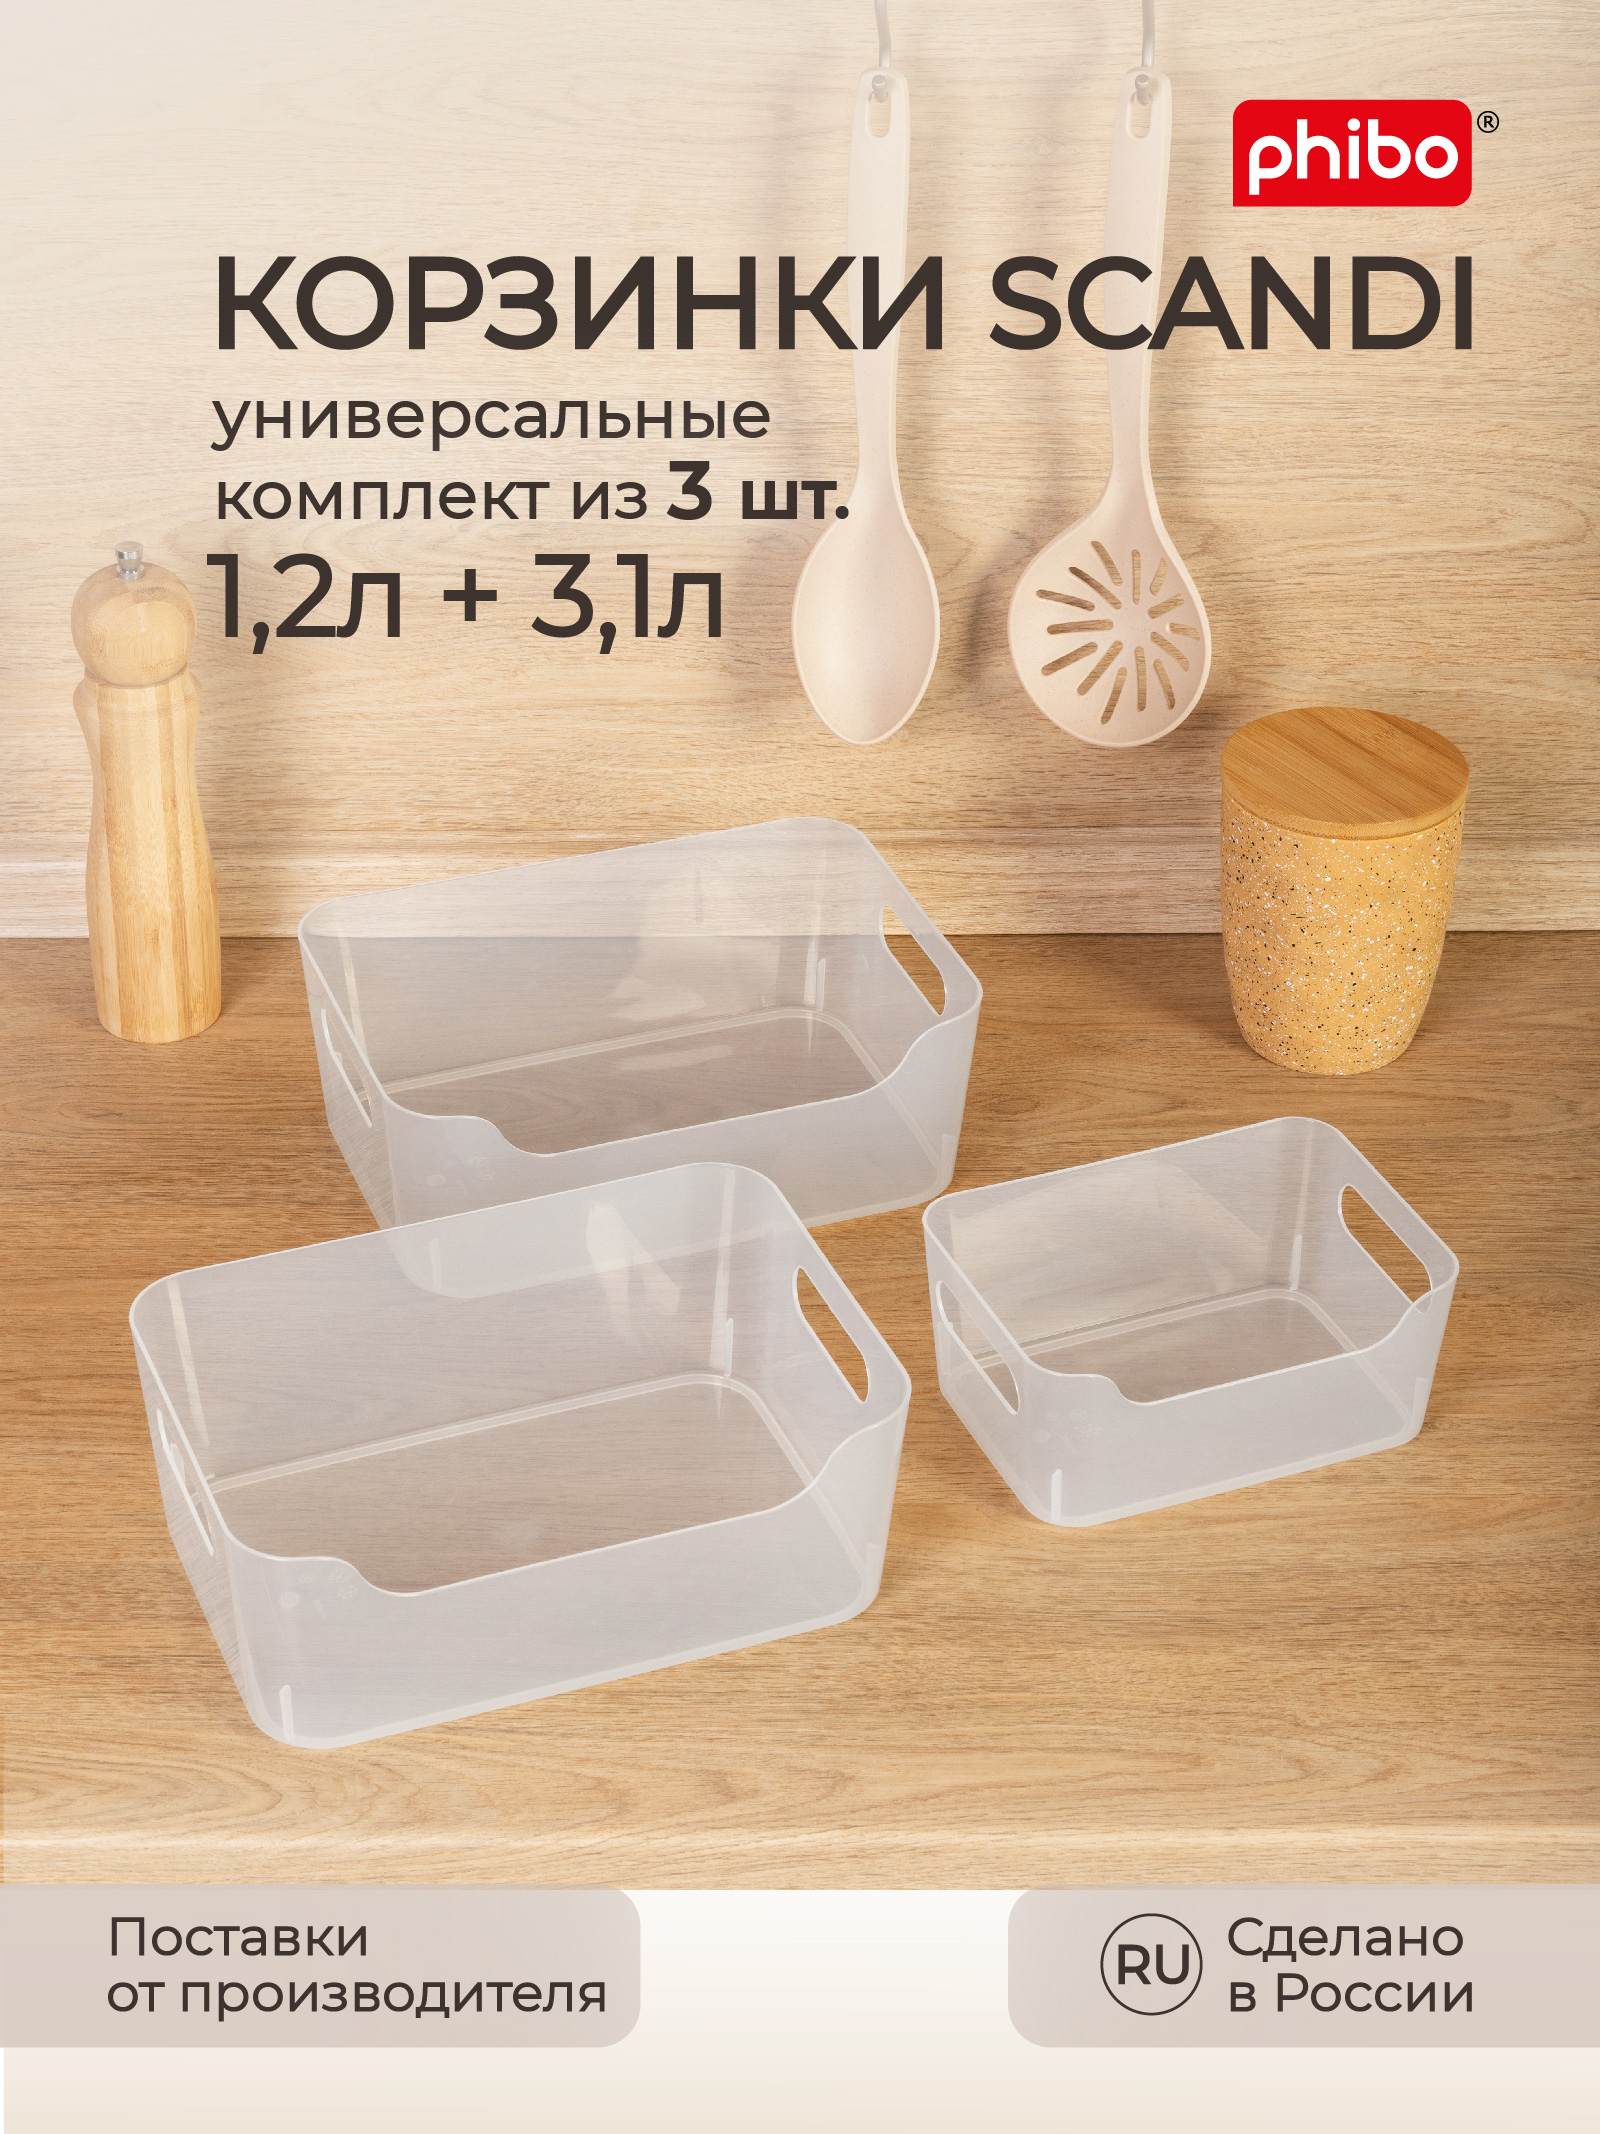 Комплект корзинок Phibo универсальных Scandi 3шт 1.2л+2x3.1л бесцветный - фото 1